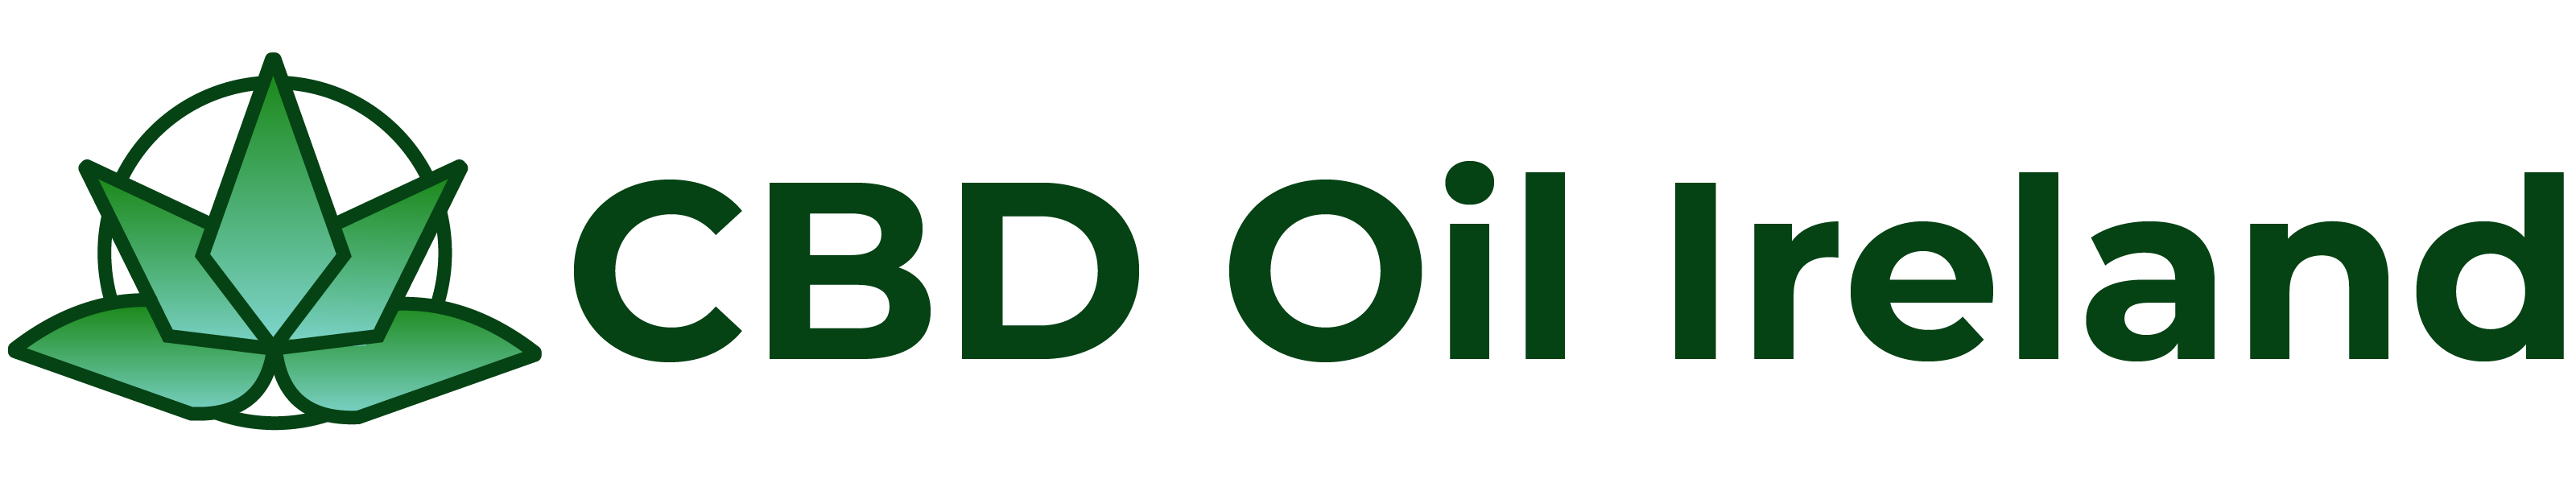 CBD Oil Ireland